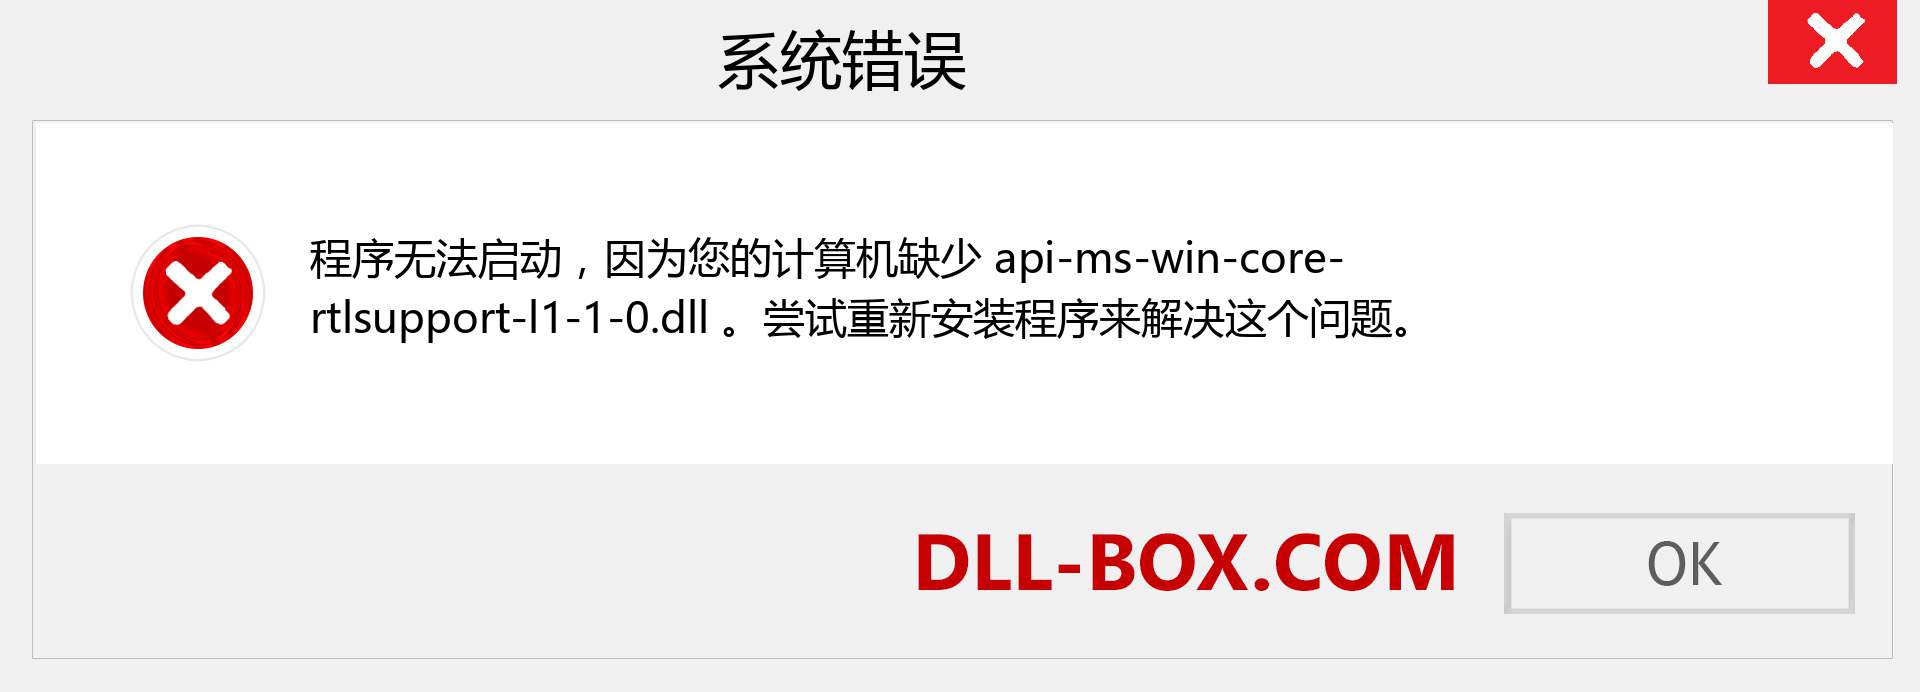 api-ms-win-core-rtlsupport-l1-1-0.dll 文件丢失？。 适用于 Windows 7、8、10 的下载 - 修复 Windows、照片、图像上的 api-ms-win-core-rtlsupport-l1-1-0 dll 丢失错误